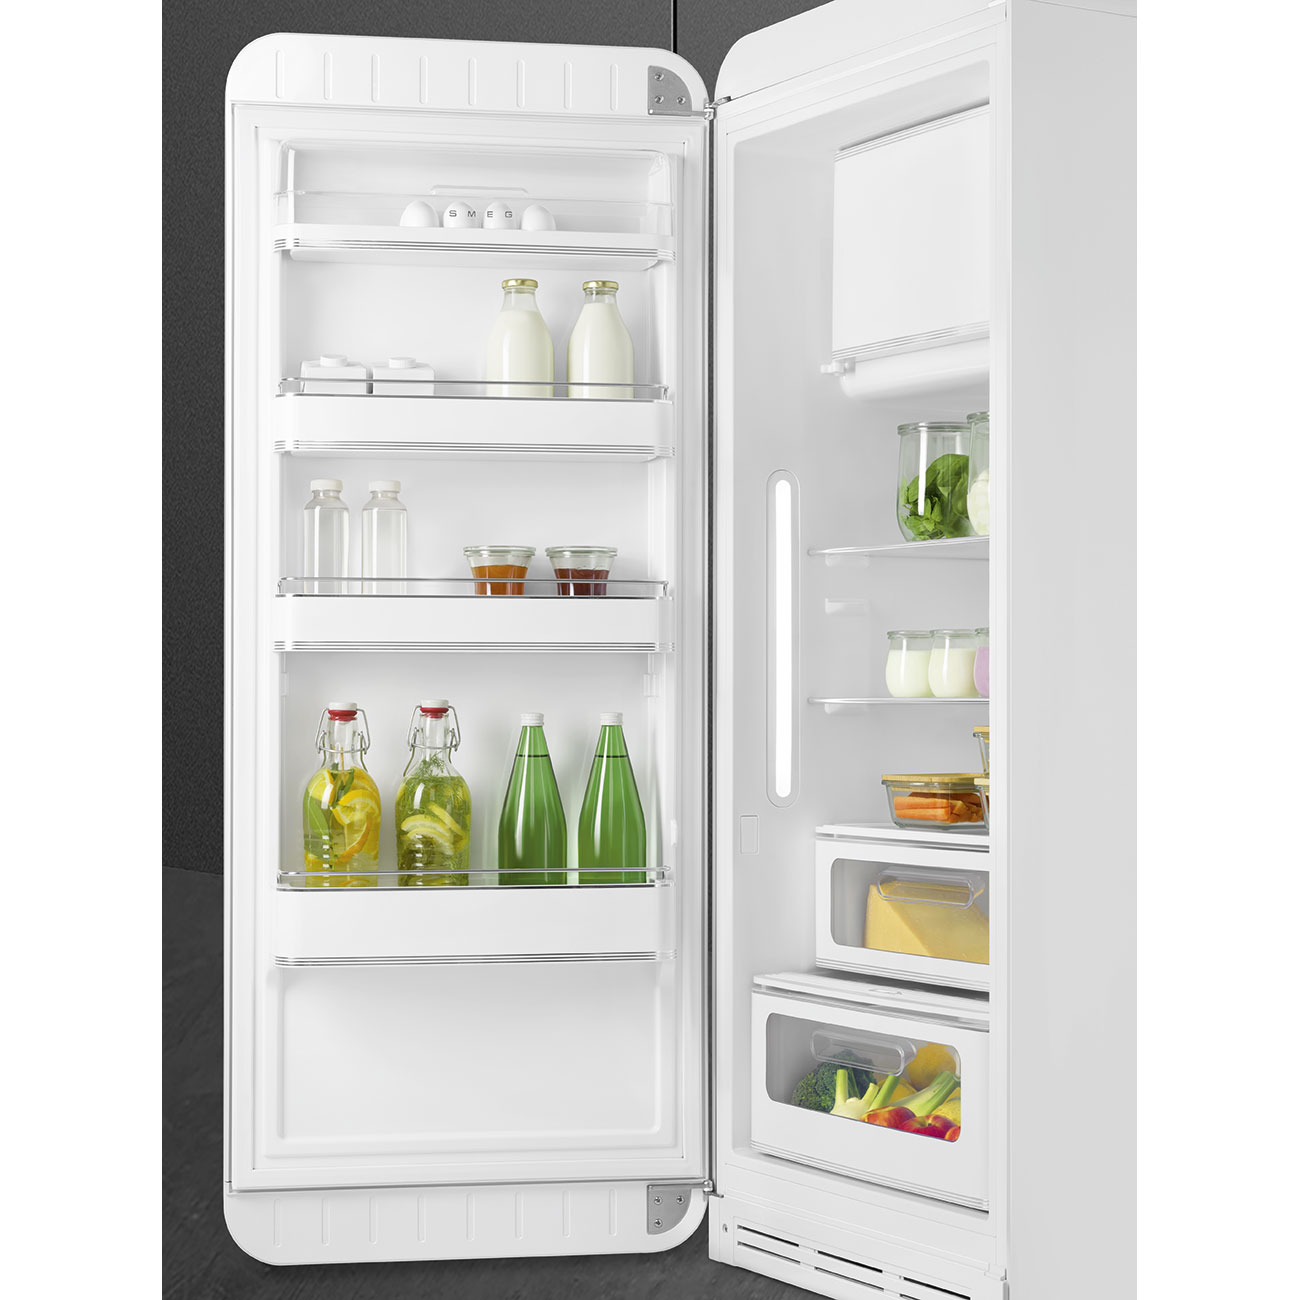 White refrigerator - Smeg_9